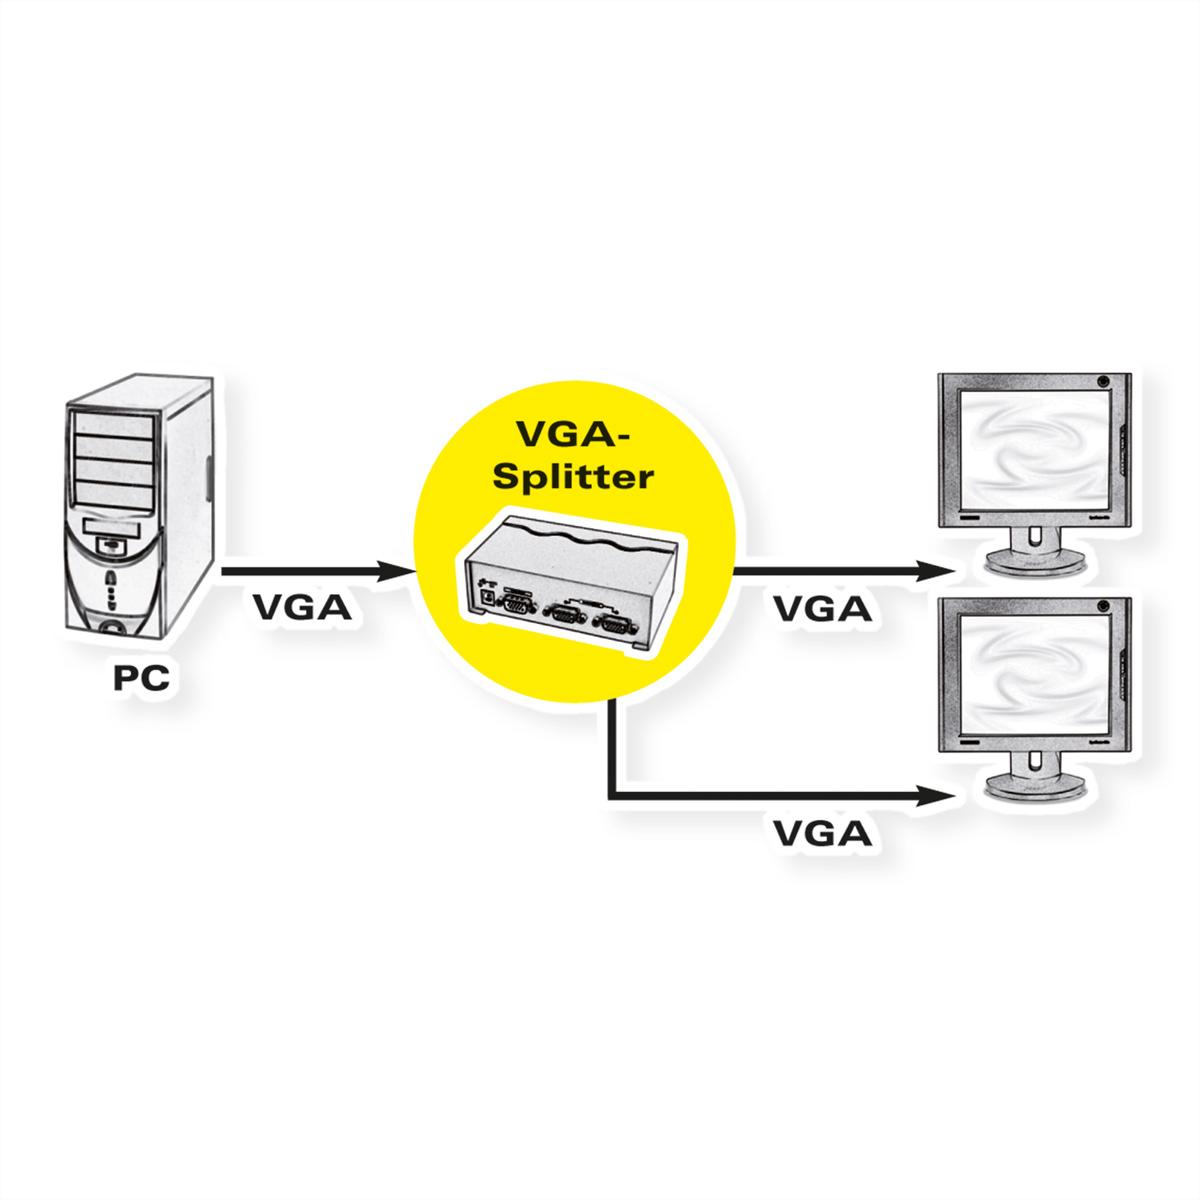 ROLINE VGA Video-Splitter, hochauflösend, 450 2-fach MHz, VGA-Video-Splitter